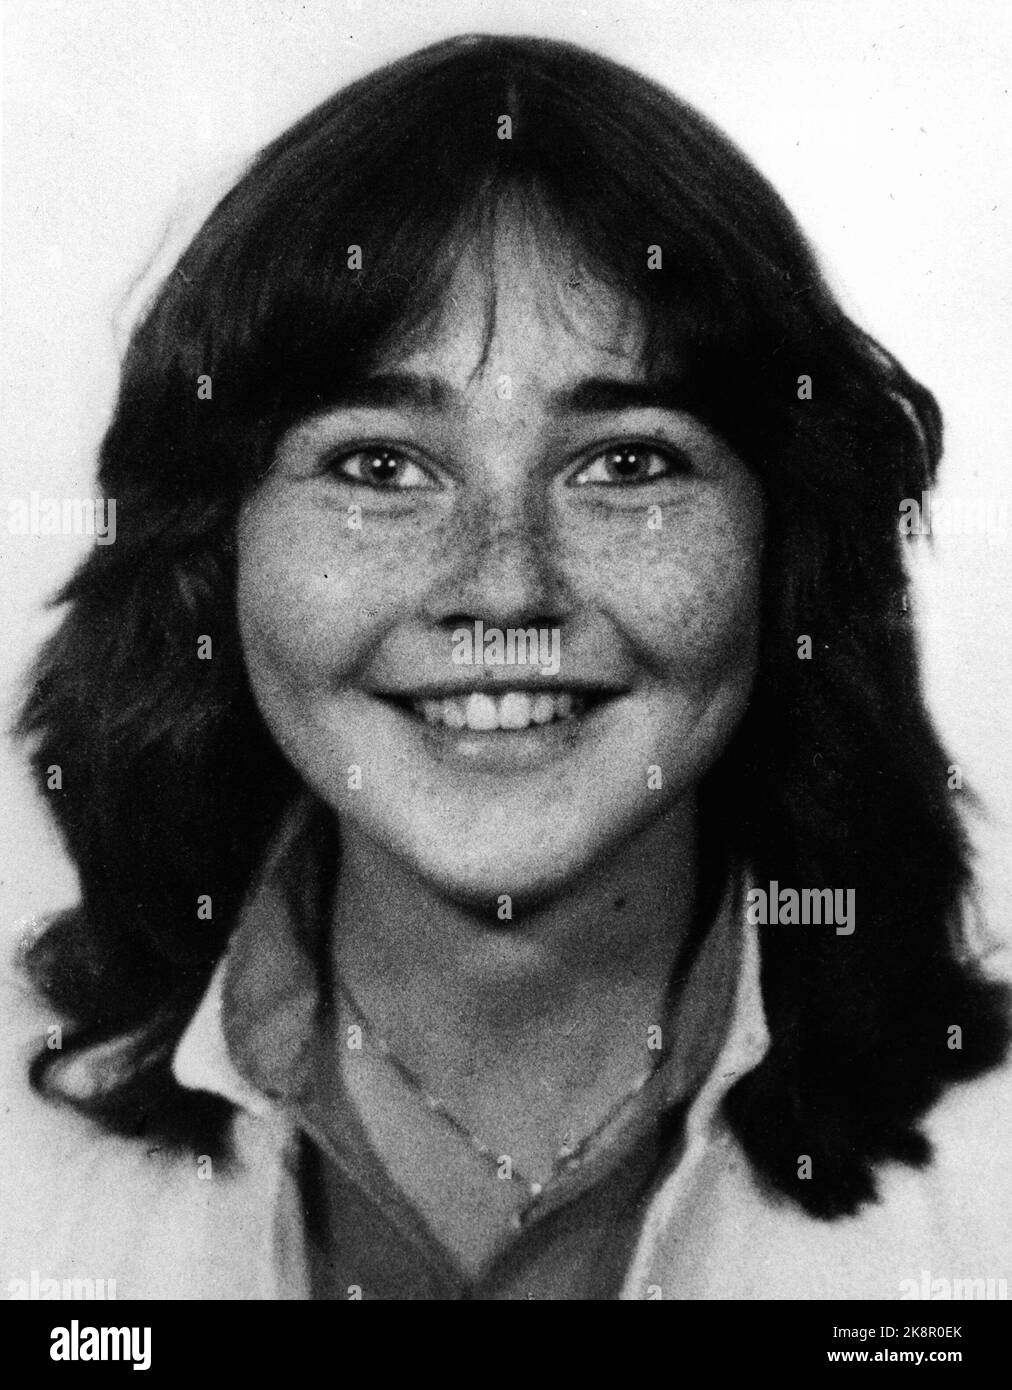 Oslo 1981: Trine Jensen (17) sans trace du centre d'Oslo août 1981. À la mi-octobre, elle est retrouvée morte à Svartskog en dehors d'Oslo. Archives NTB / NTB - - la photo est d'environ 7 Mo - - Banque D'Images